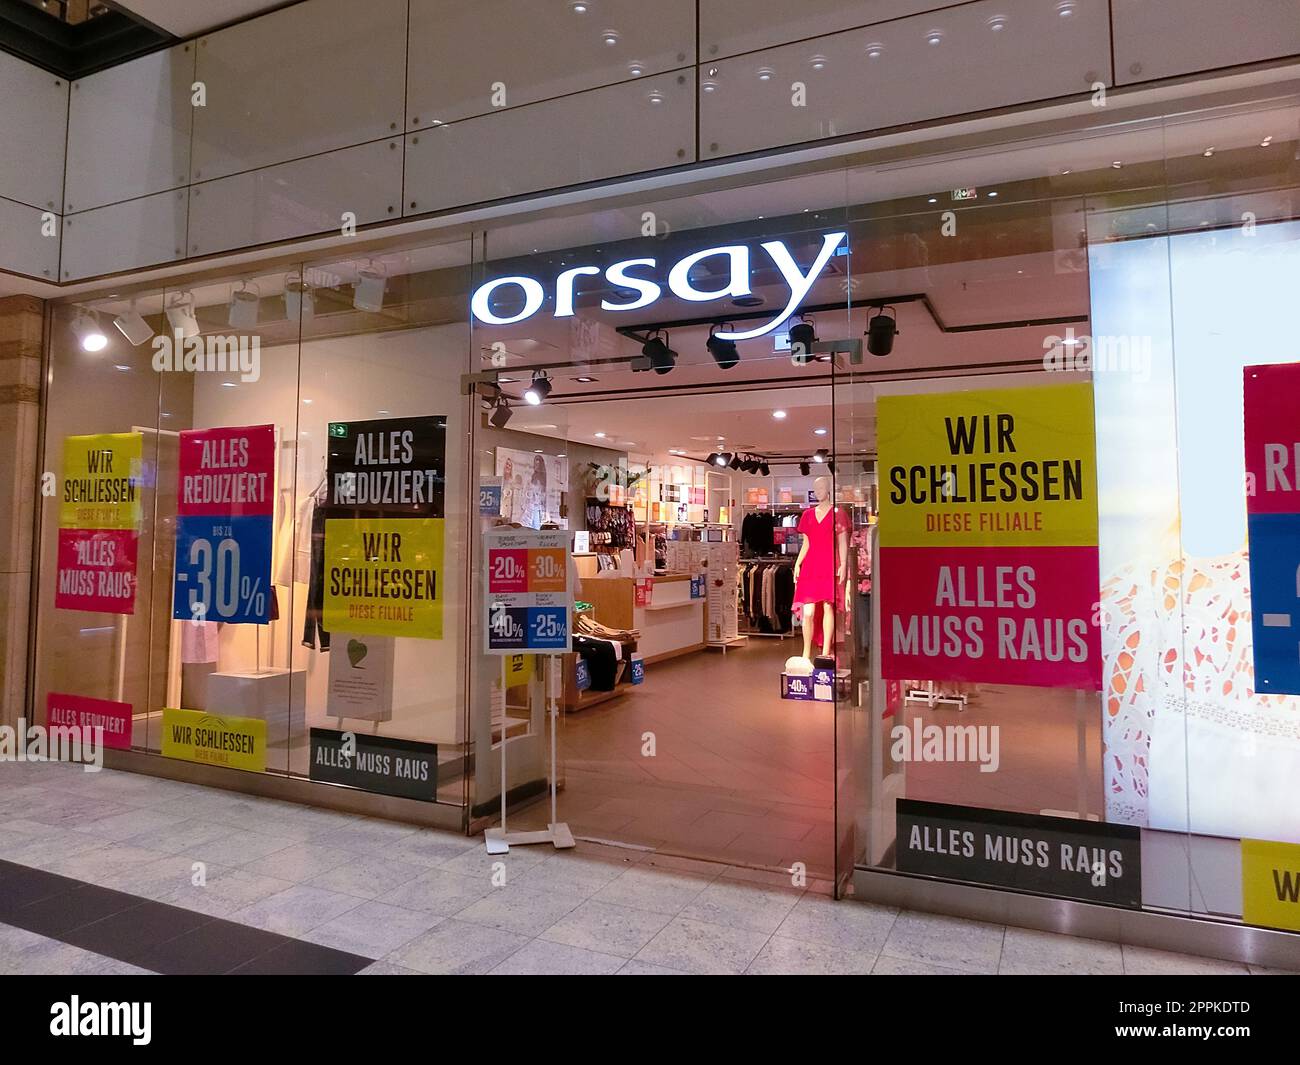 Orsay Fashion store in Neu-Isenburg, Germany Stock Photo